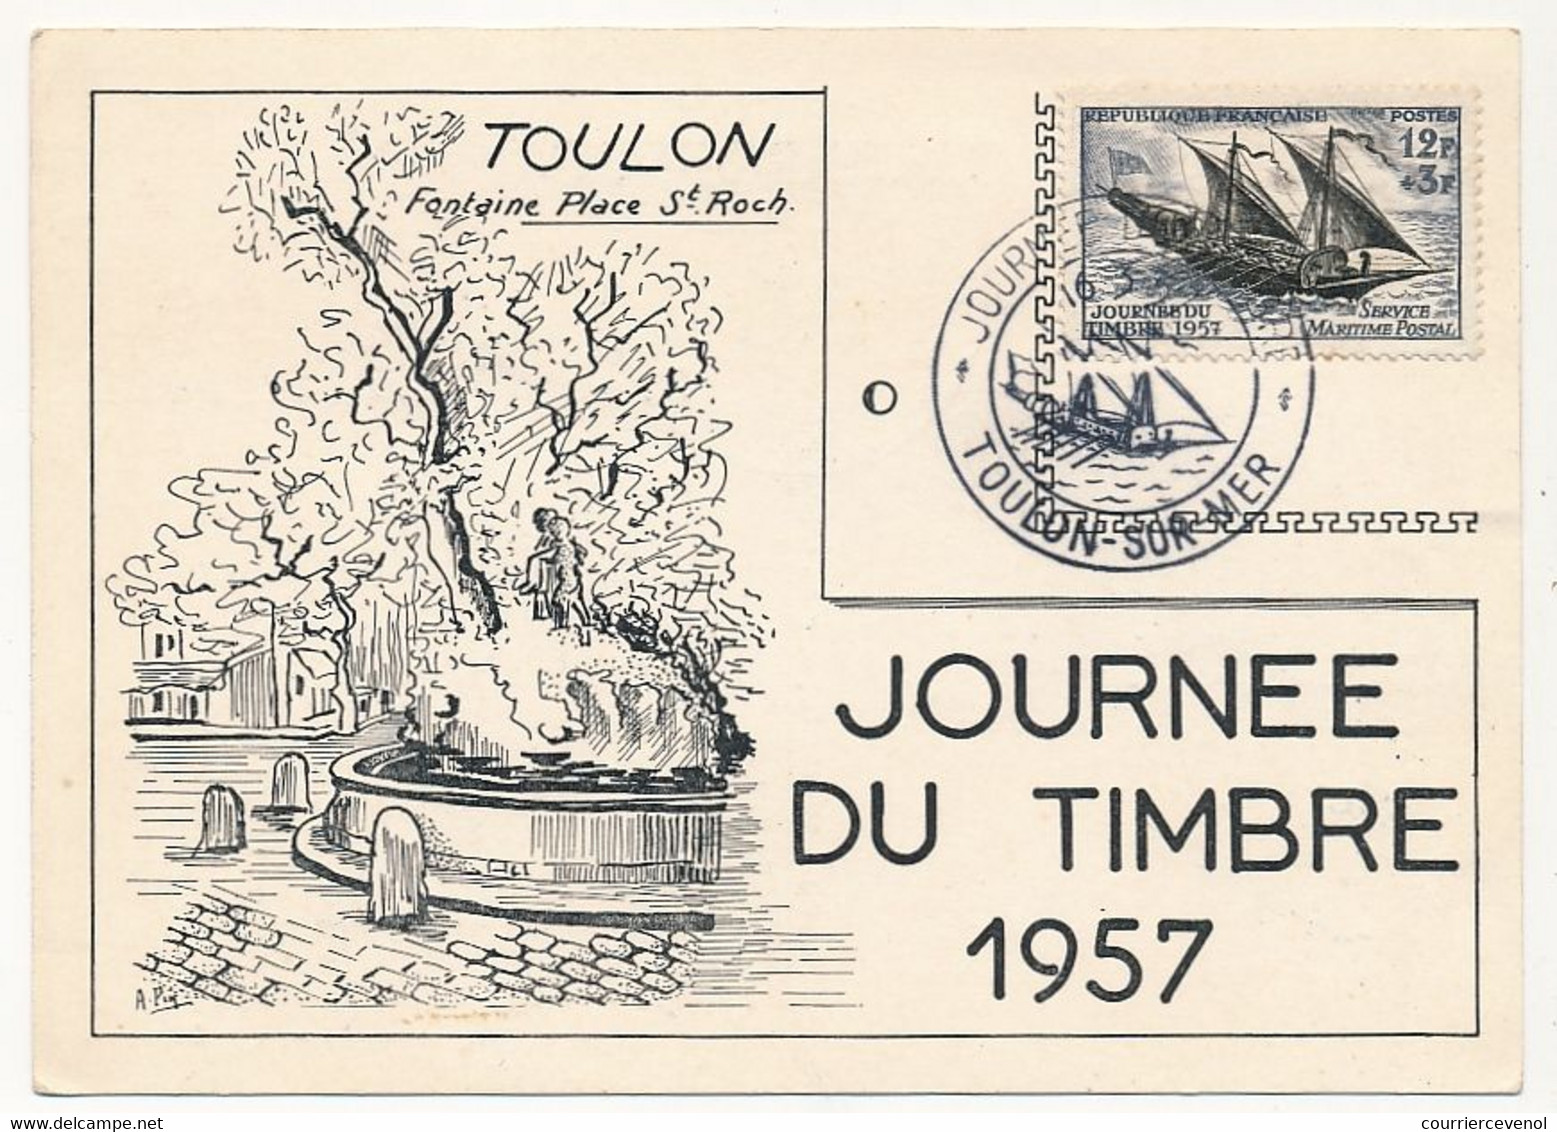 FRANCE - Carte Locale - Journée Du Timbre 1957 - Service Maritime Postal - TOULON-SUR-MER - 16/3/1957 - Vignette Au Dos - Día Del Sello